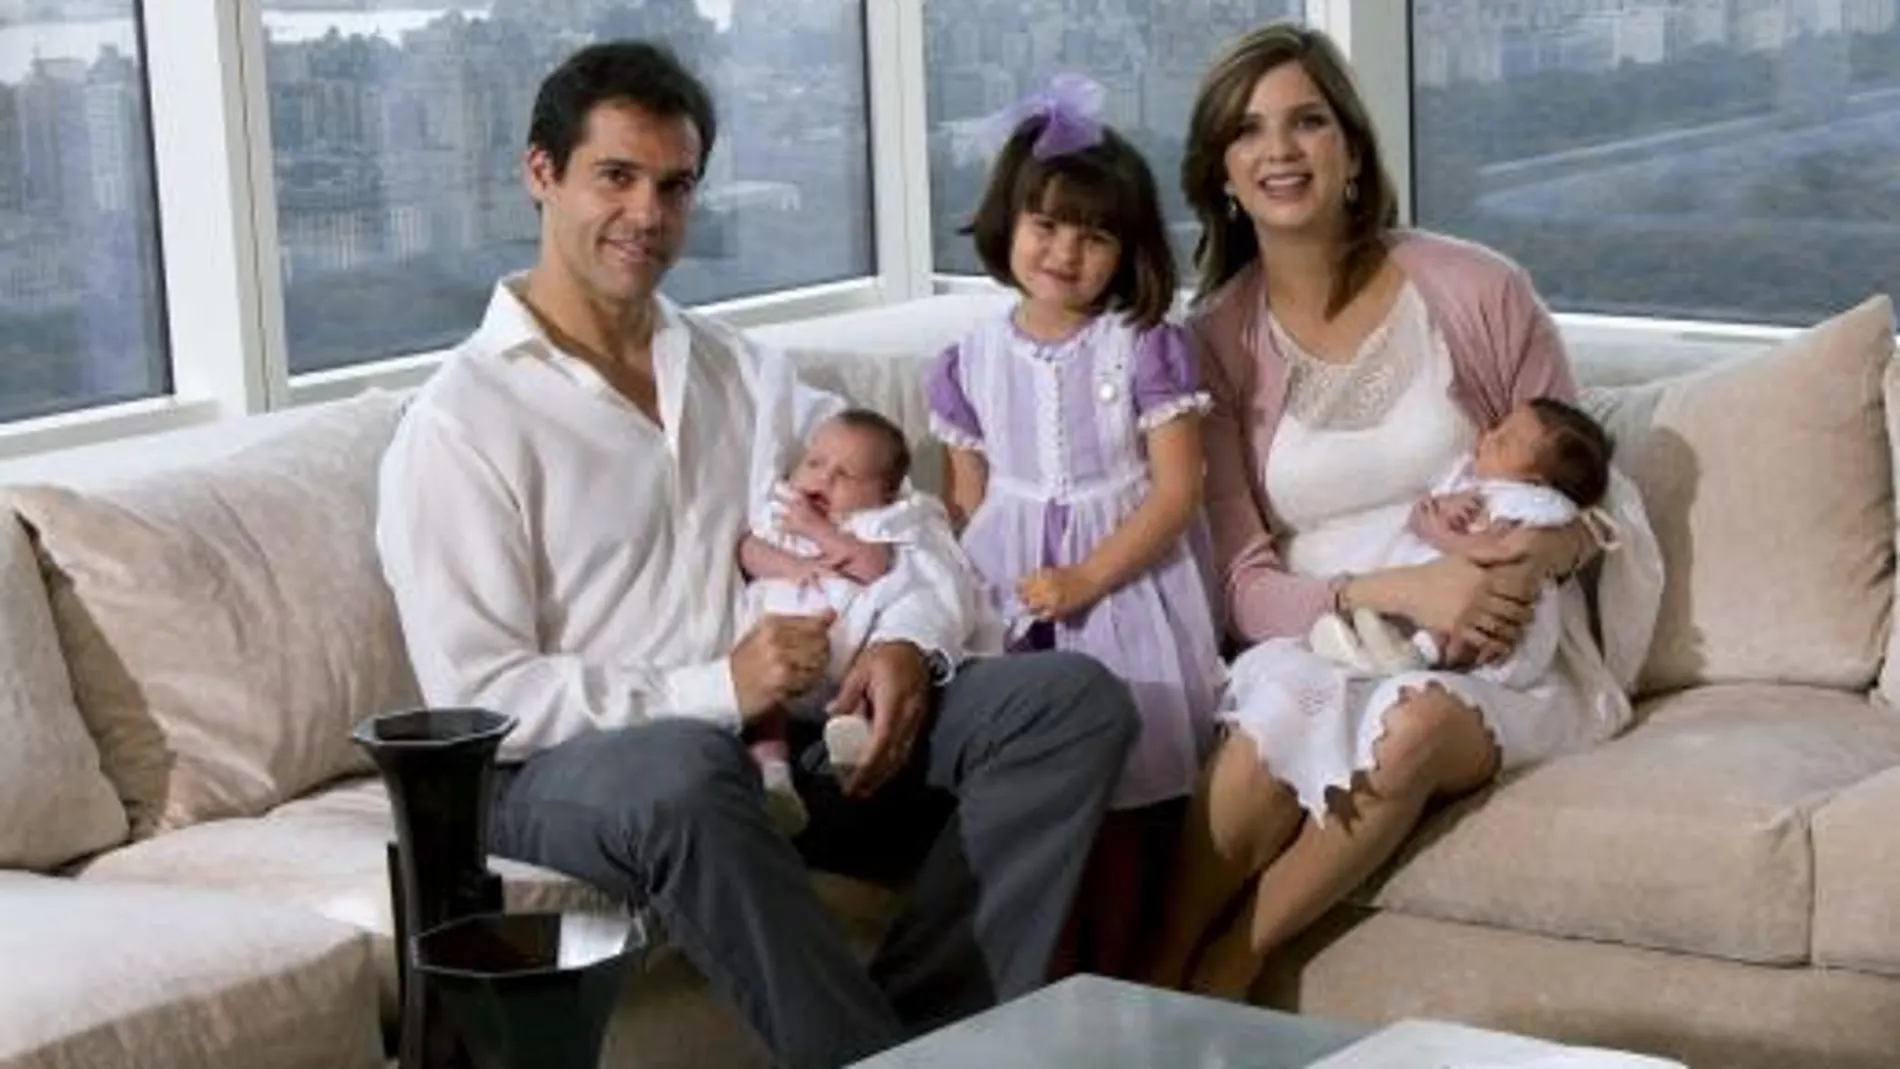 Luis Alfonso de Borbón y Margarita Vargas posan con toda su familia